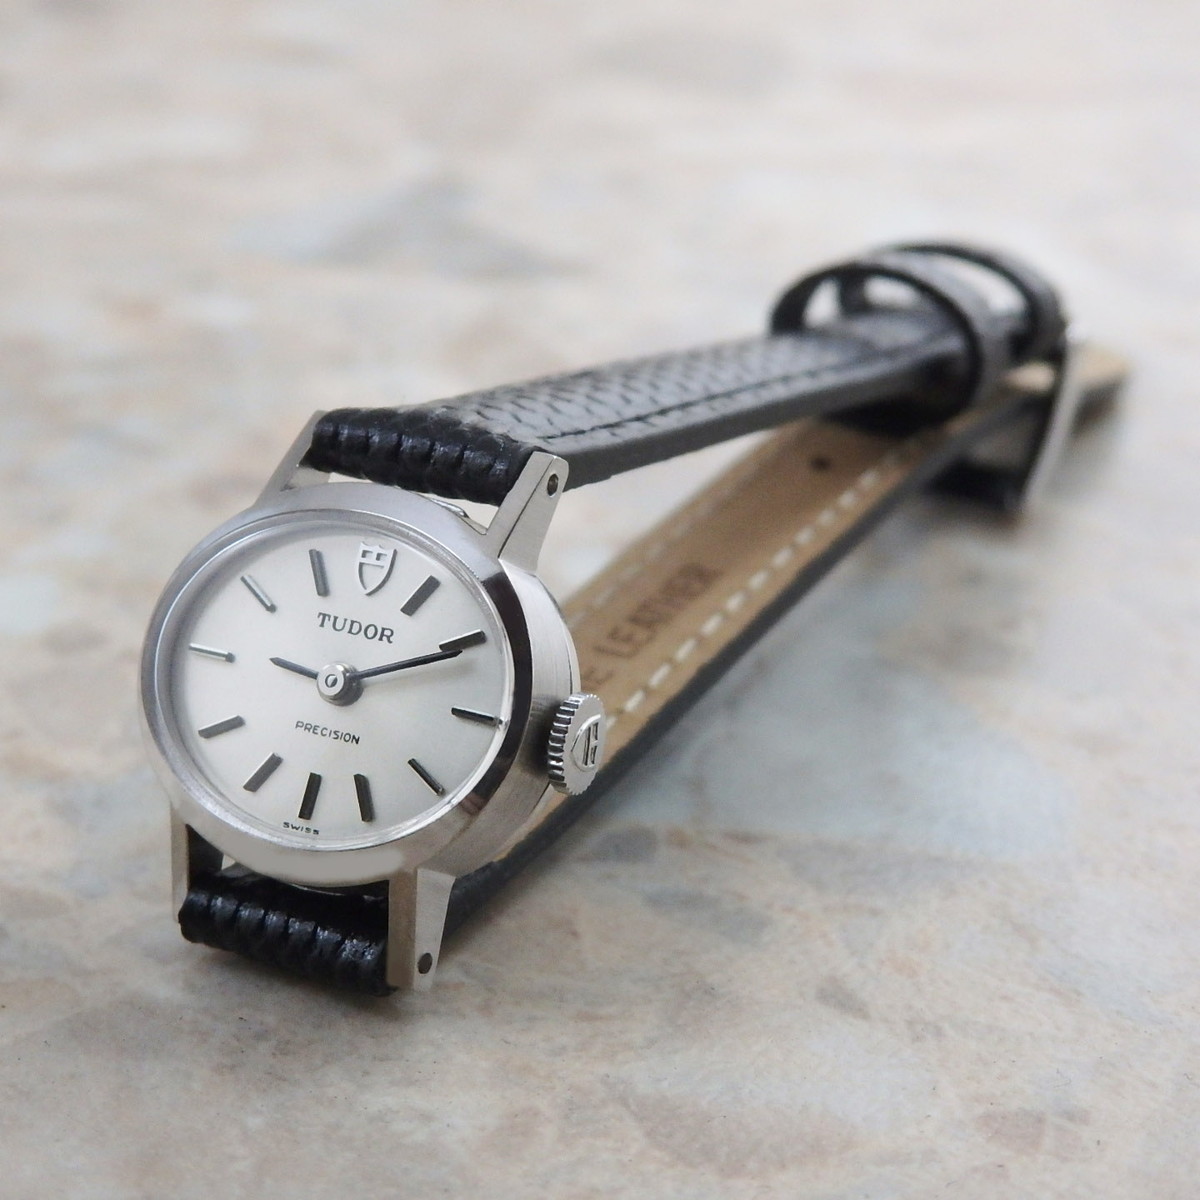 チュードル アンティーク レディース 18KWG 金無垢 ホワイトゴールド プレシジョン オーバルケース 1967年 TUDOR 時計 腕時計  ヴィンテージ ウォッチ 女性用 ビンテージ | アンティークウォッチライフ腕時計